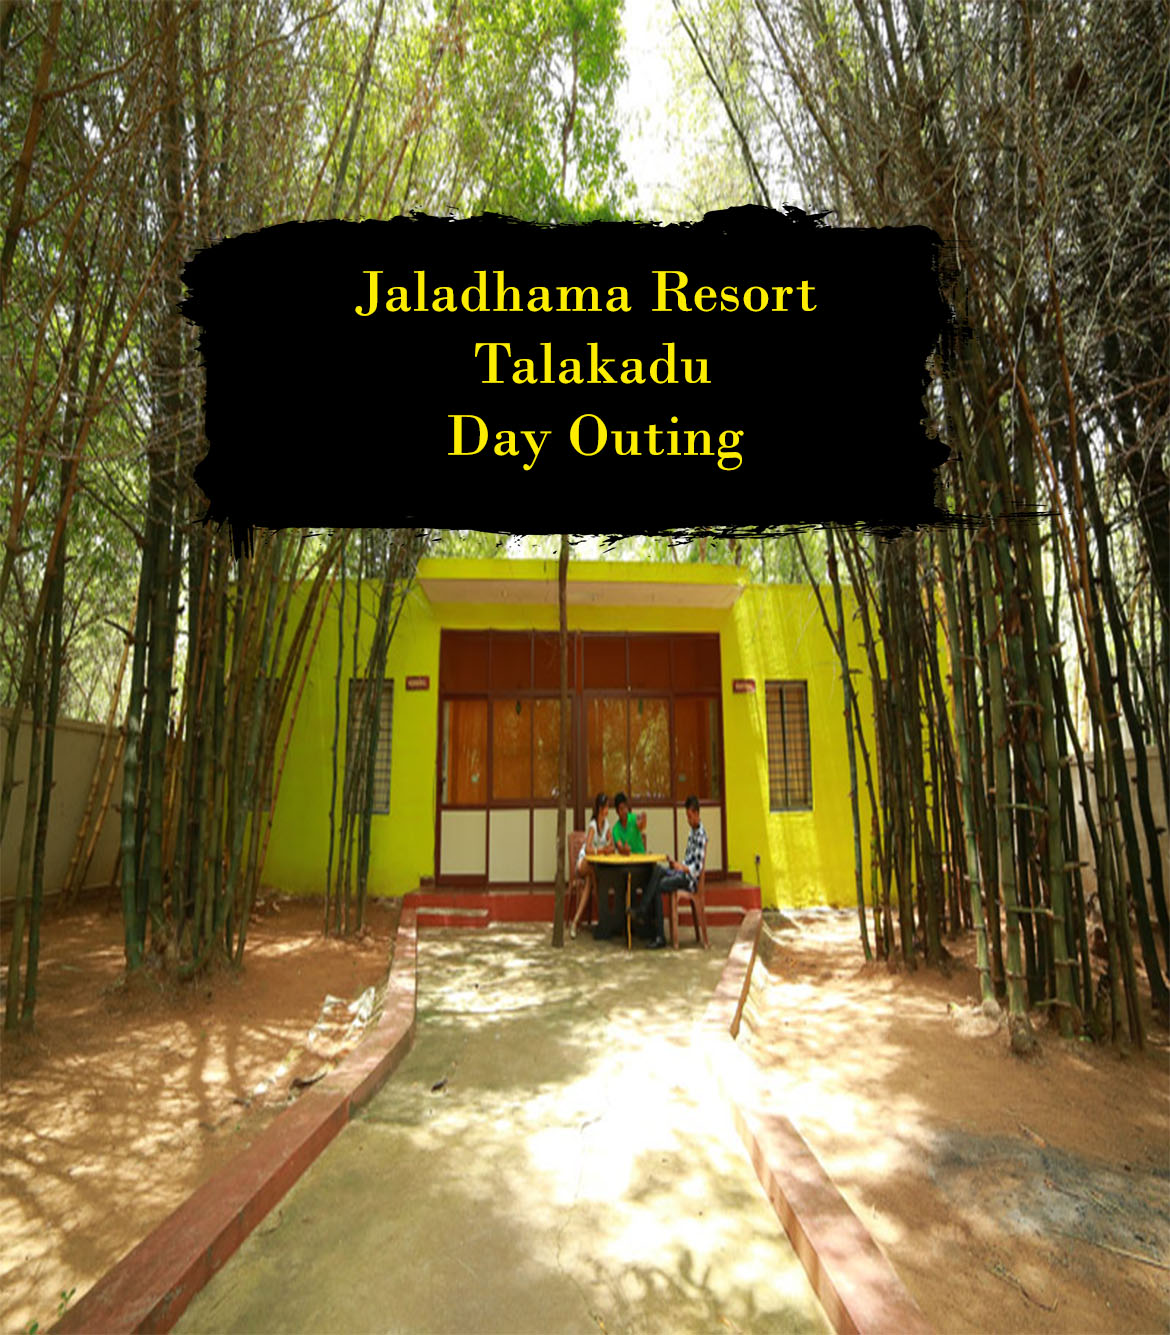 Jaladhama Resort Talakadu Day Outing